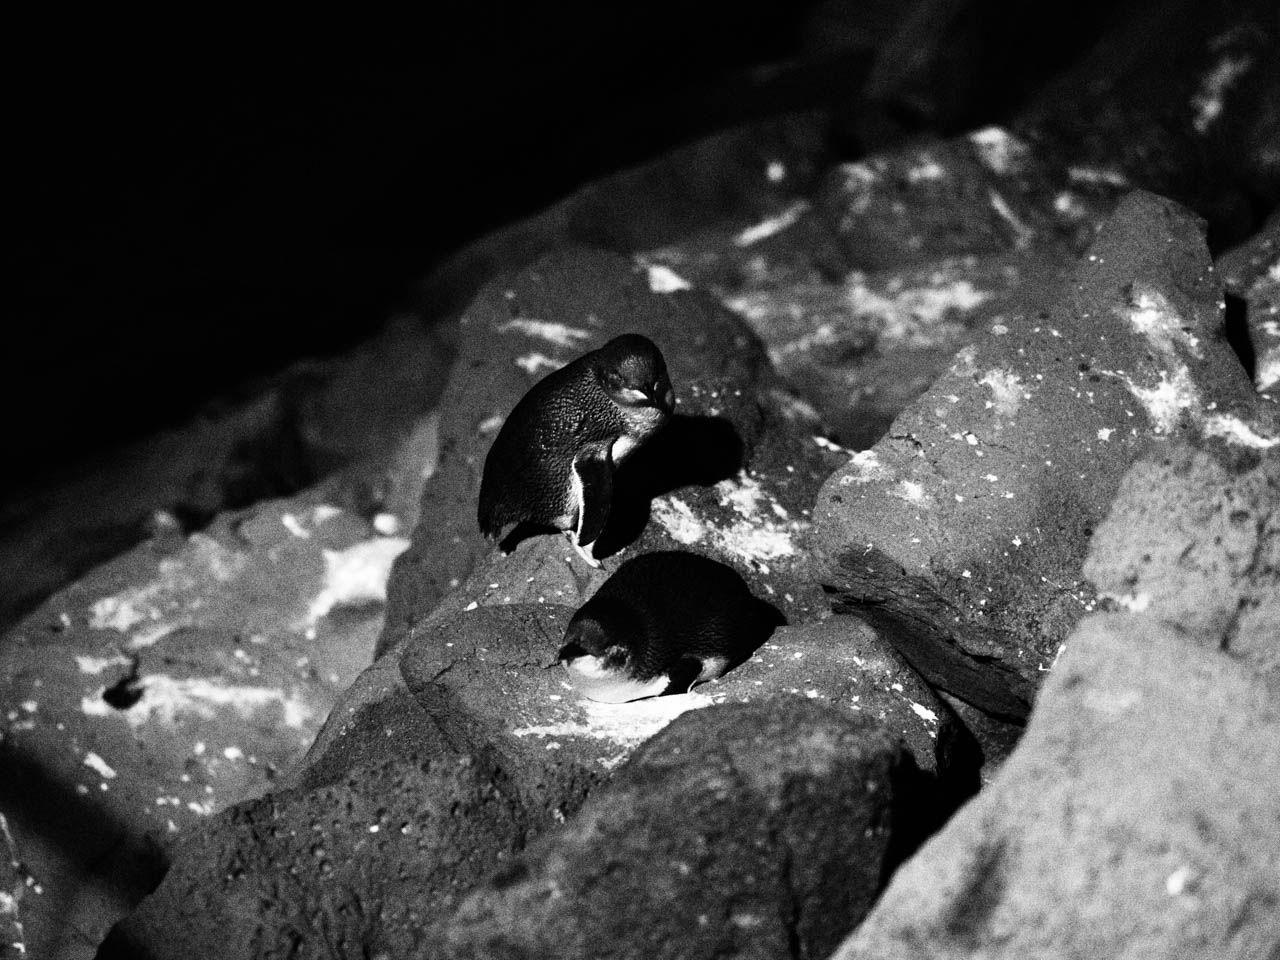 Little (Fairy) Penguin family group outside their nest